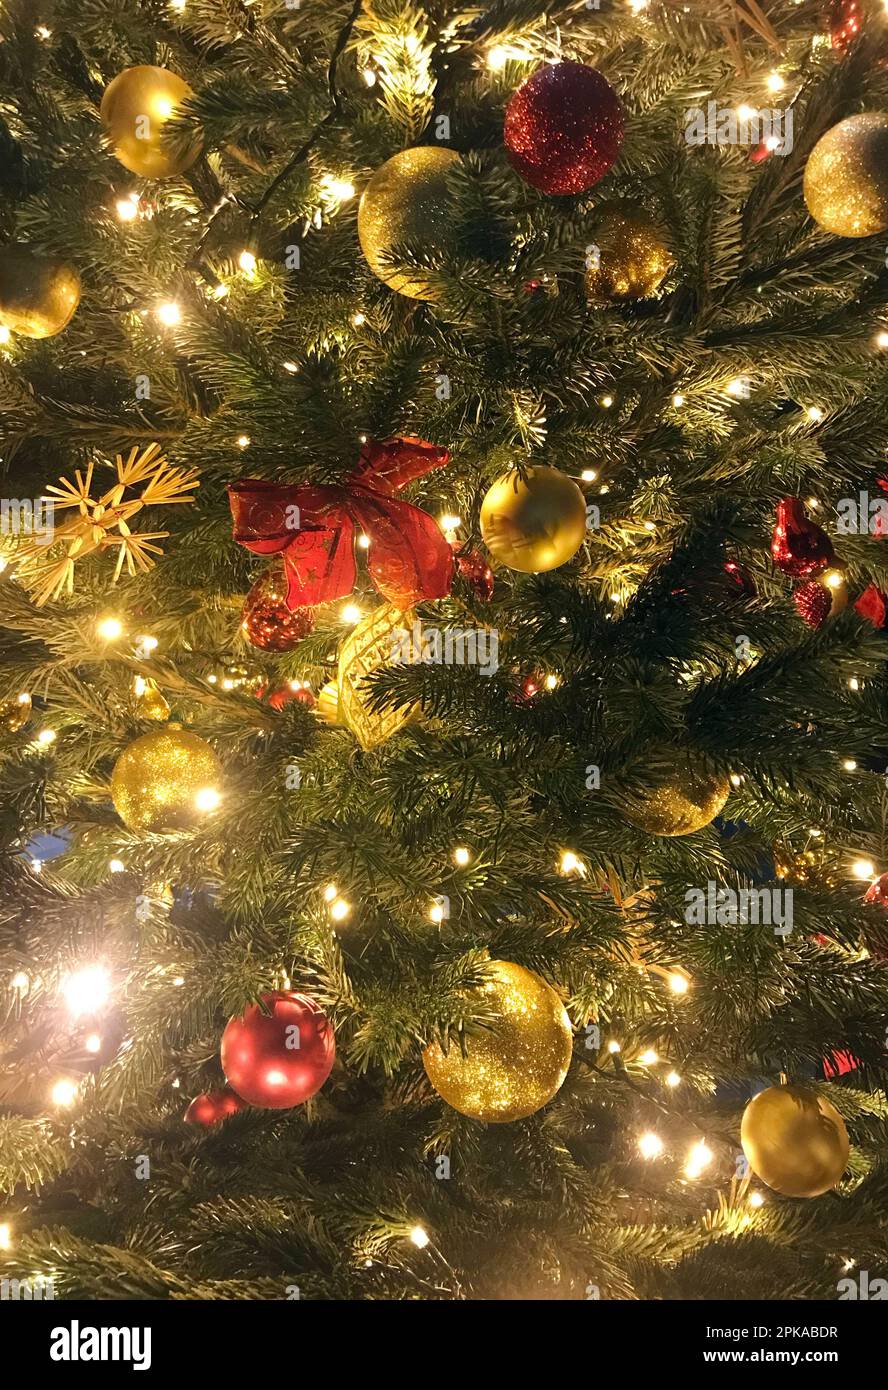 15.12.2022, Allemagne, , Berlin - boules, ruban et étoile de paille accrochée à un arbre de Noël. 00S221215D837CAROEX.JPG [AUTORISATION DU MODÈLE : NON APPLICABLE, PR Banque D'Images